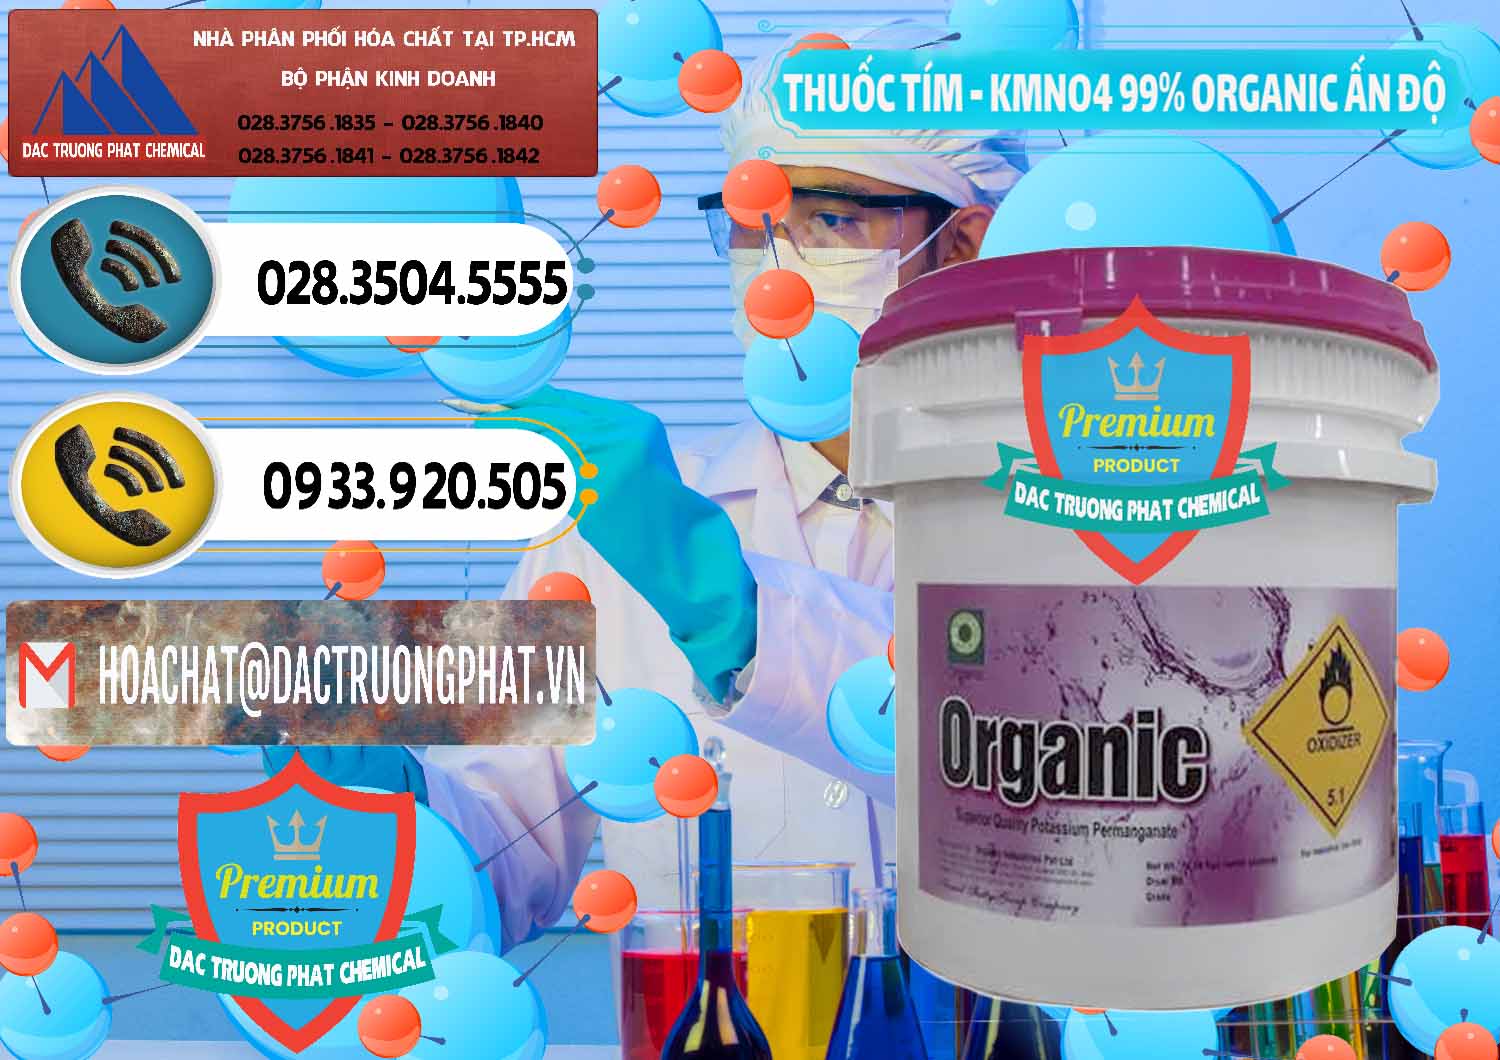 Đơn vị chuyên bán ( cung cấp ) Thuốc Tím - KMNO4 99% Organic Ấn Độ India - 0216 - Đơn vị chuyên bán & phân phối hóa chất tại TP.HCM - hoachatdetnhuom.vn